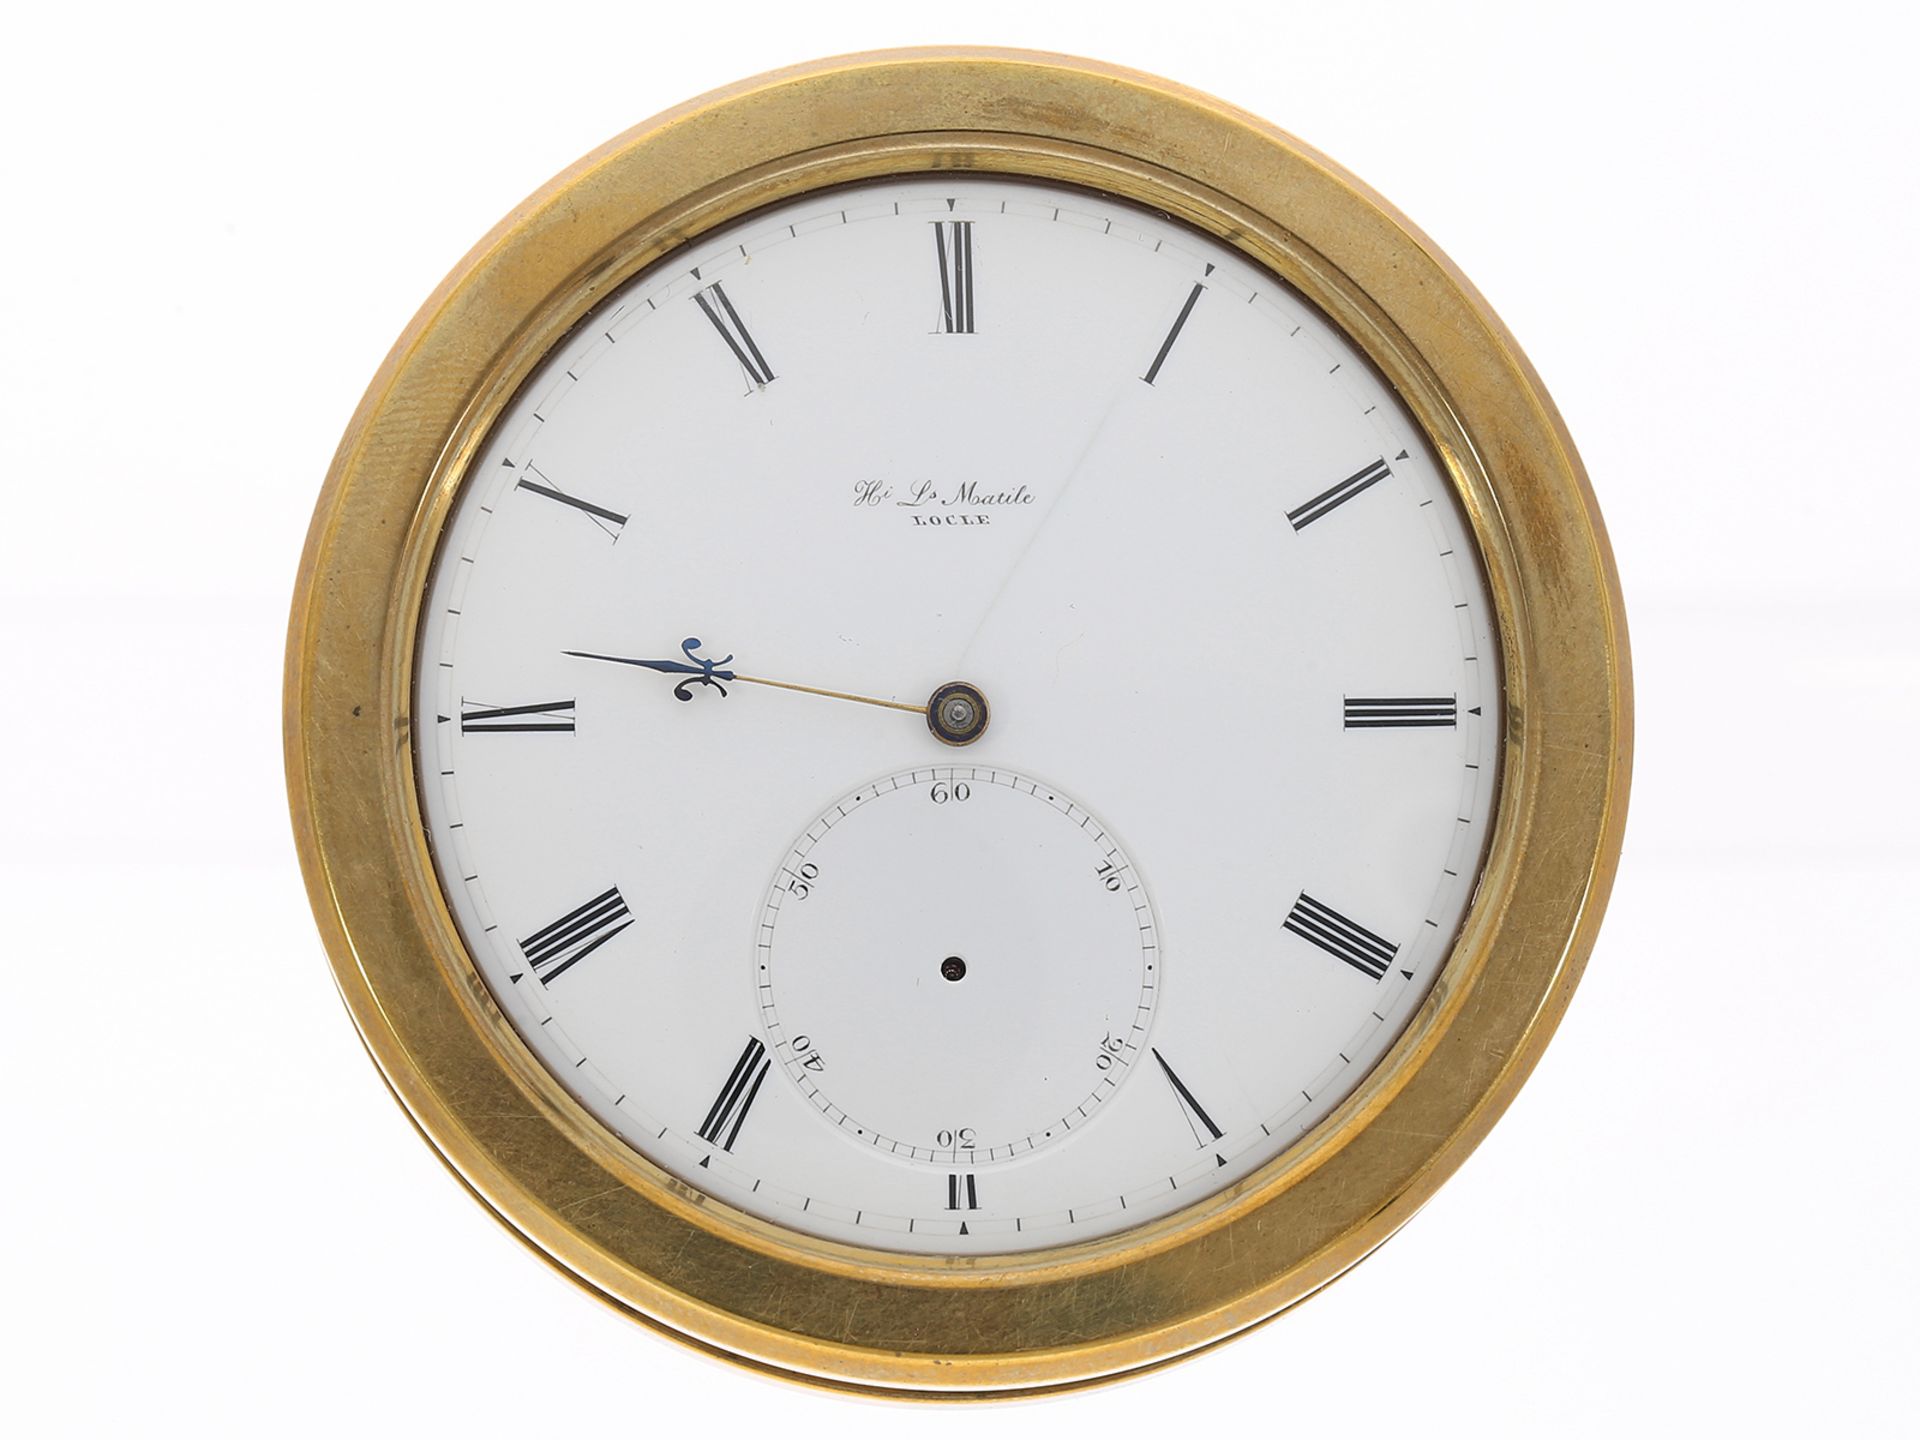 Taschenuhr: exquisites Chronometerwerk Kaliber Jürgensen, signiert Matile Locle, ca. 1870